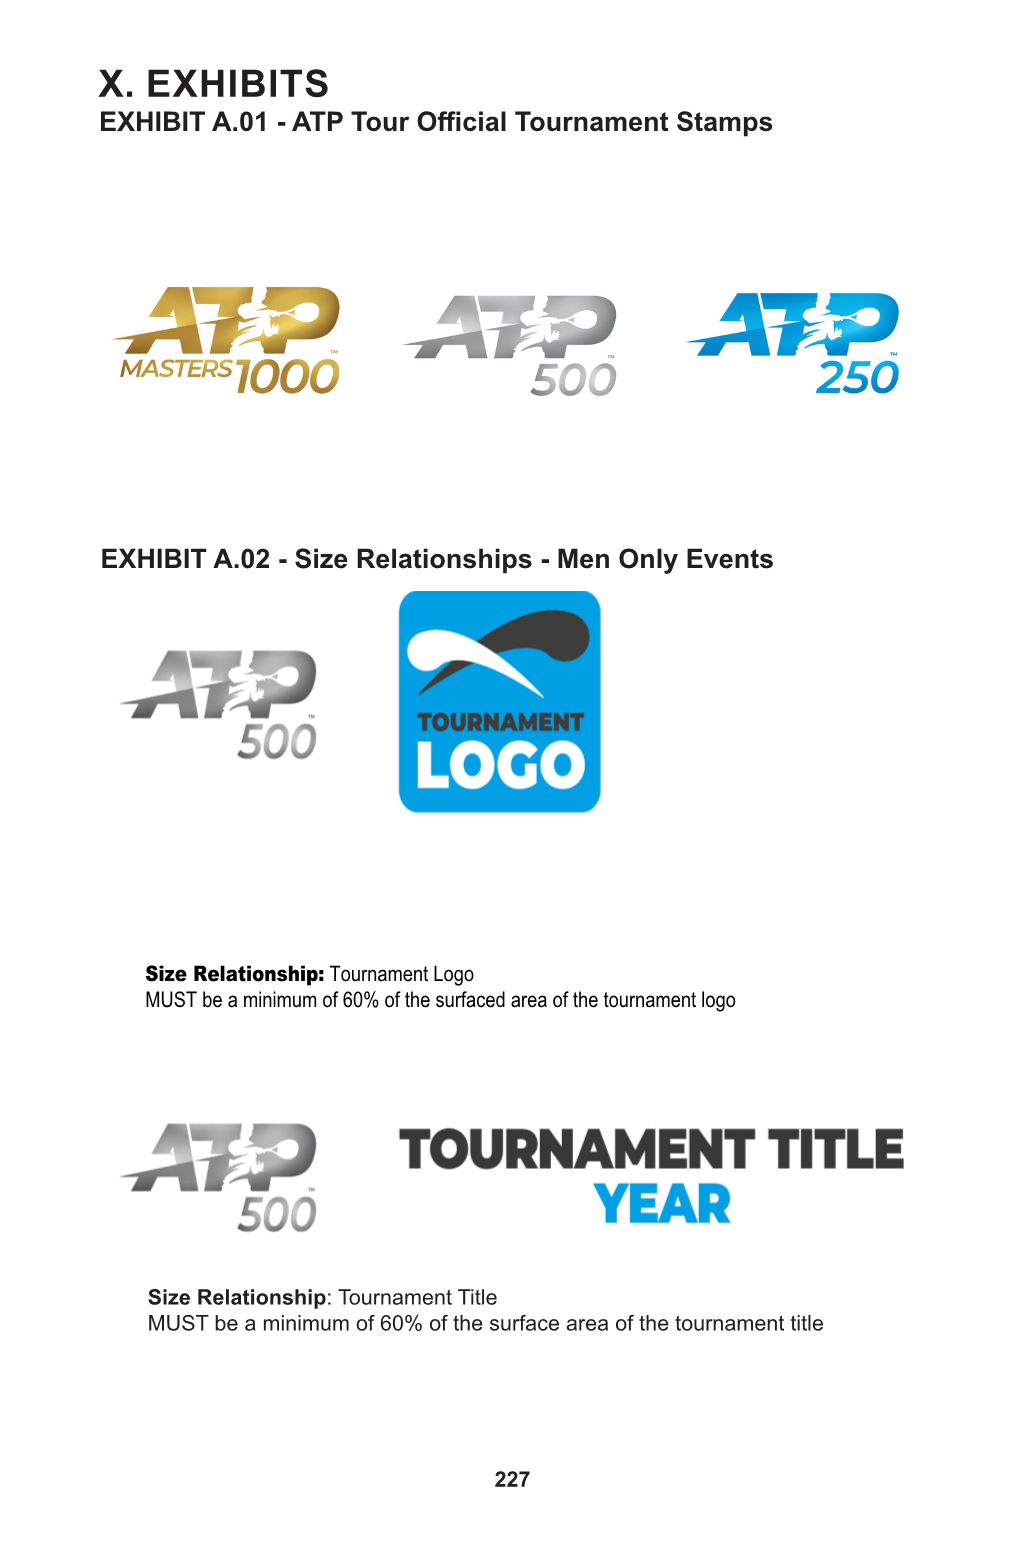 X. EXHIBITS EXHIBIT A.01 - ATP Tour Official Tournament Stamps